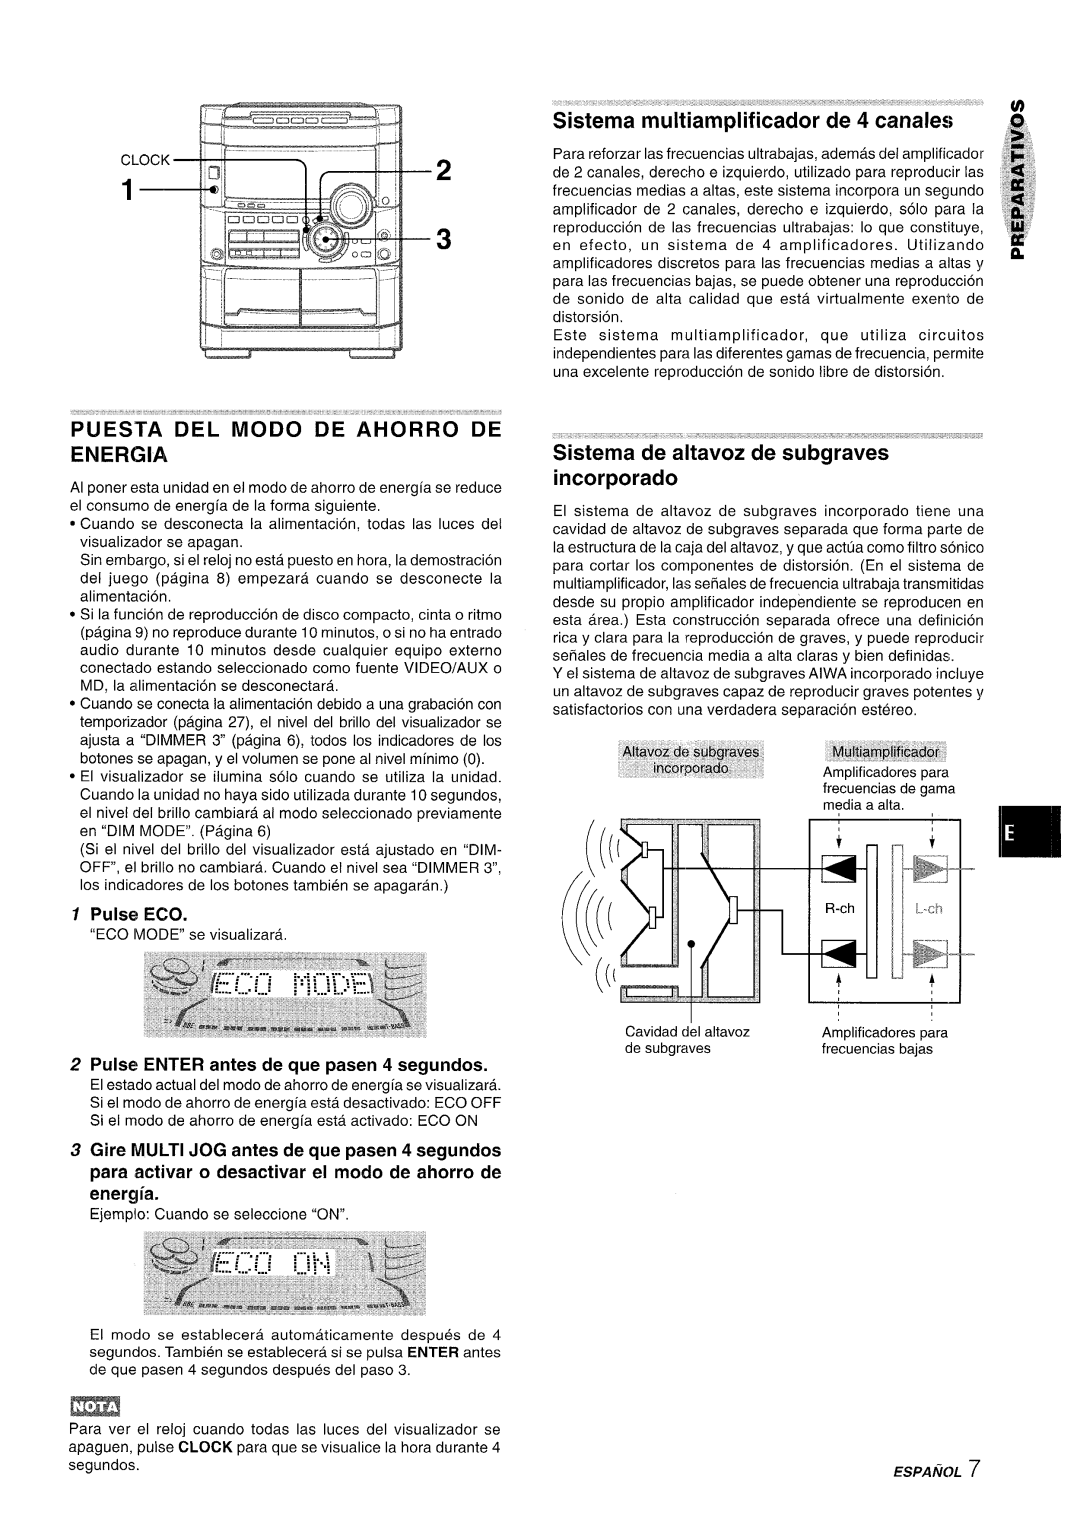 Sony NSX-A777 manual Puesta Del Modo De Ahorro De Energia, Sistema” rnultiarnpl”ficador de 4 canales, Pulse Eco, segundos 